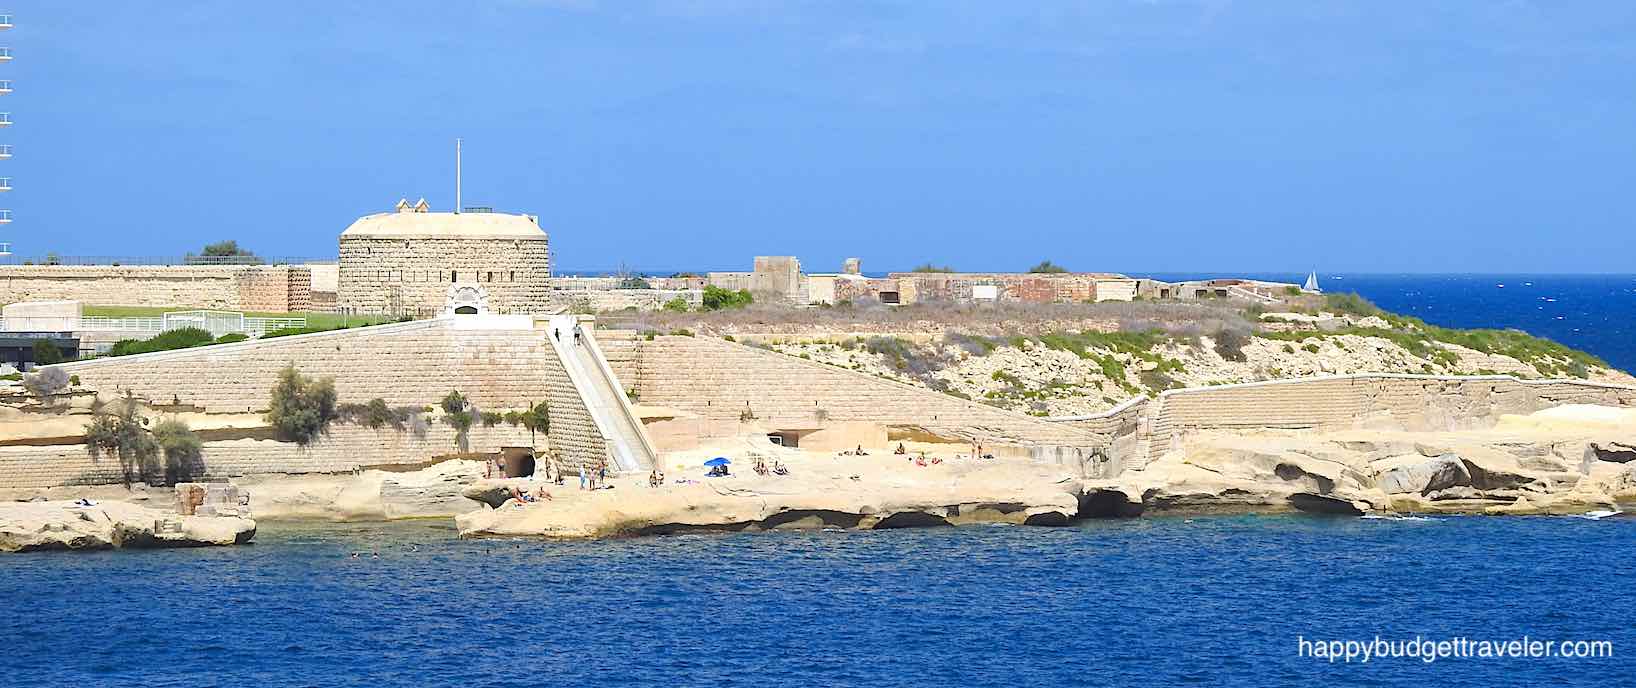 Picture of Fort Tigne, Sliema, Malta